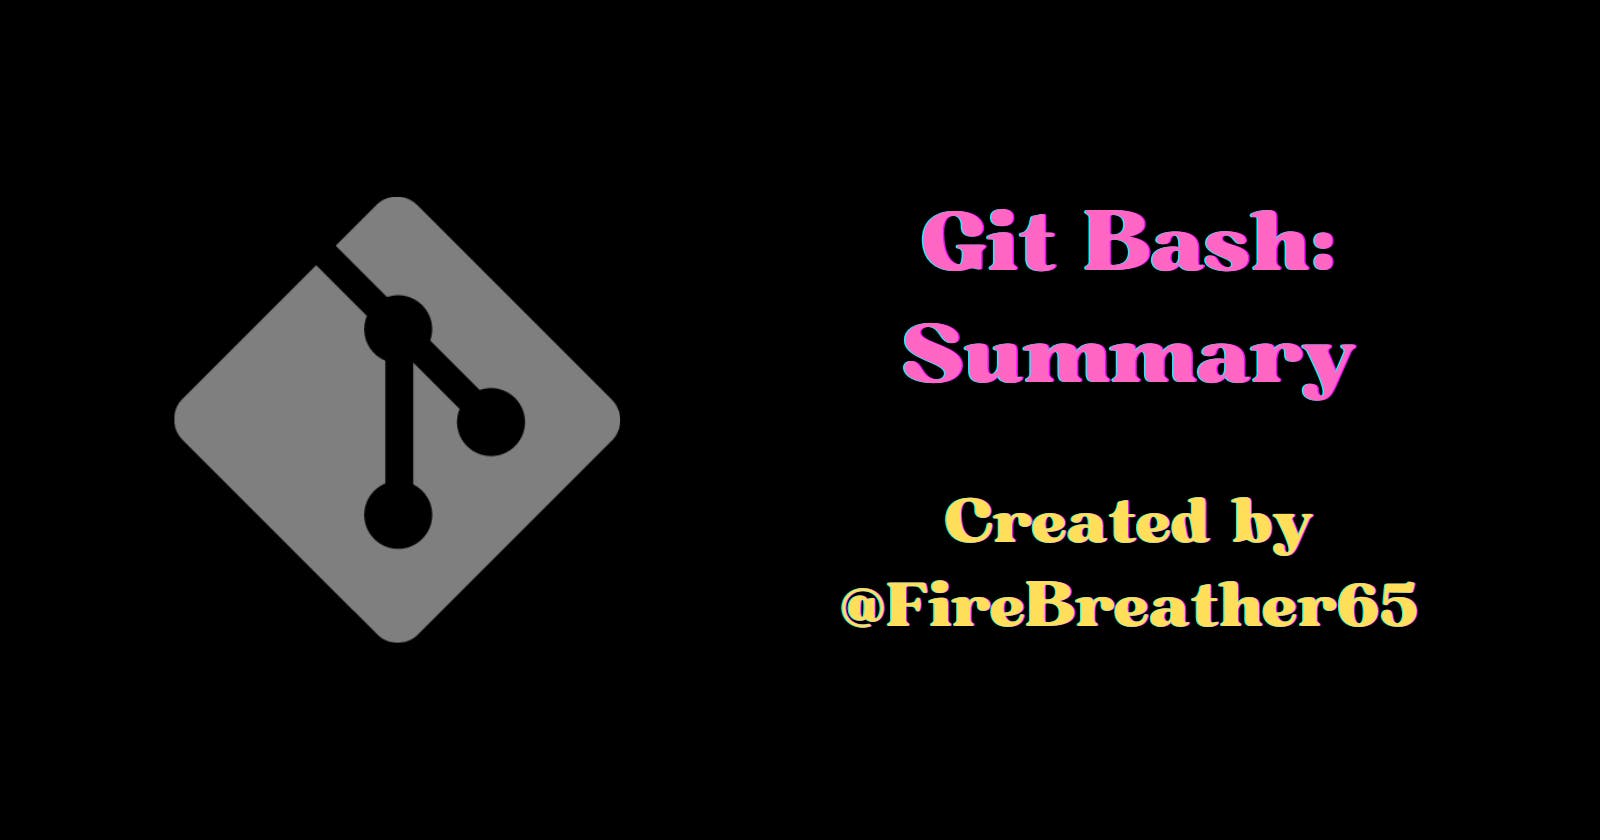 Summary of Git Bash